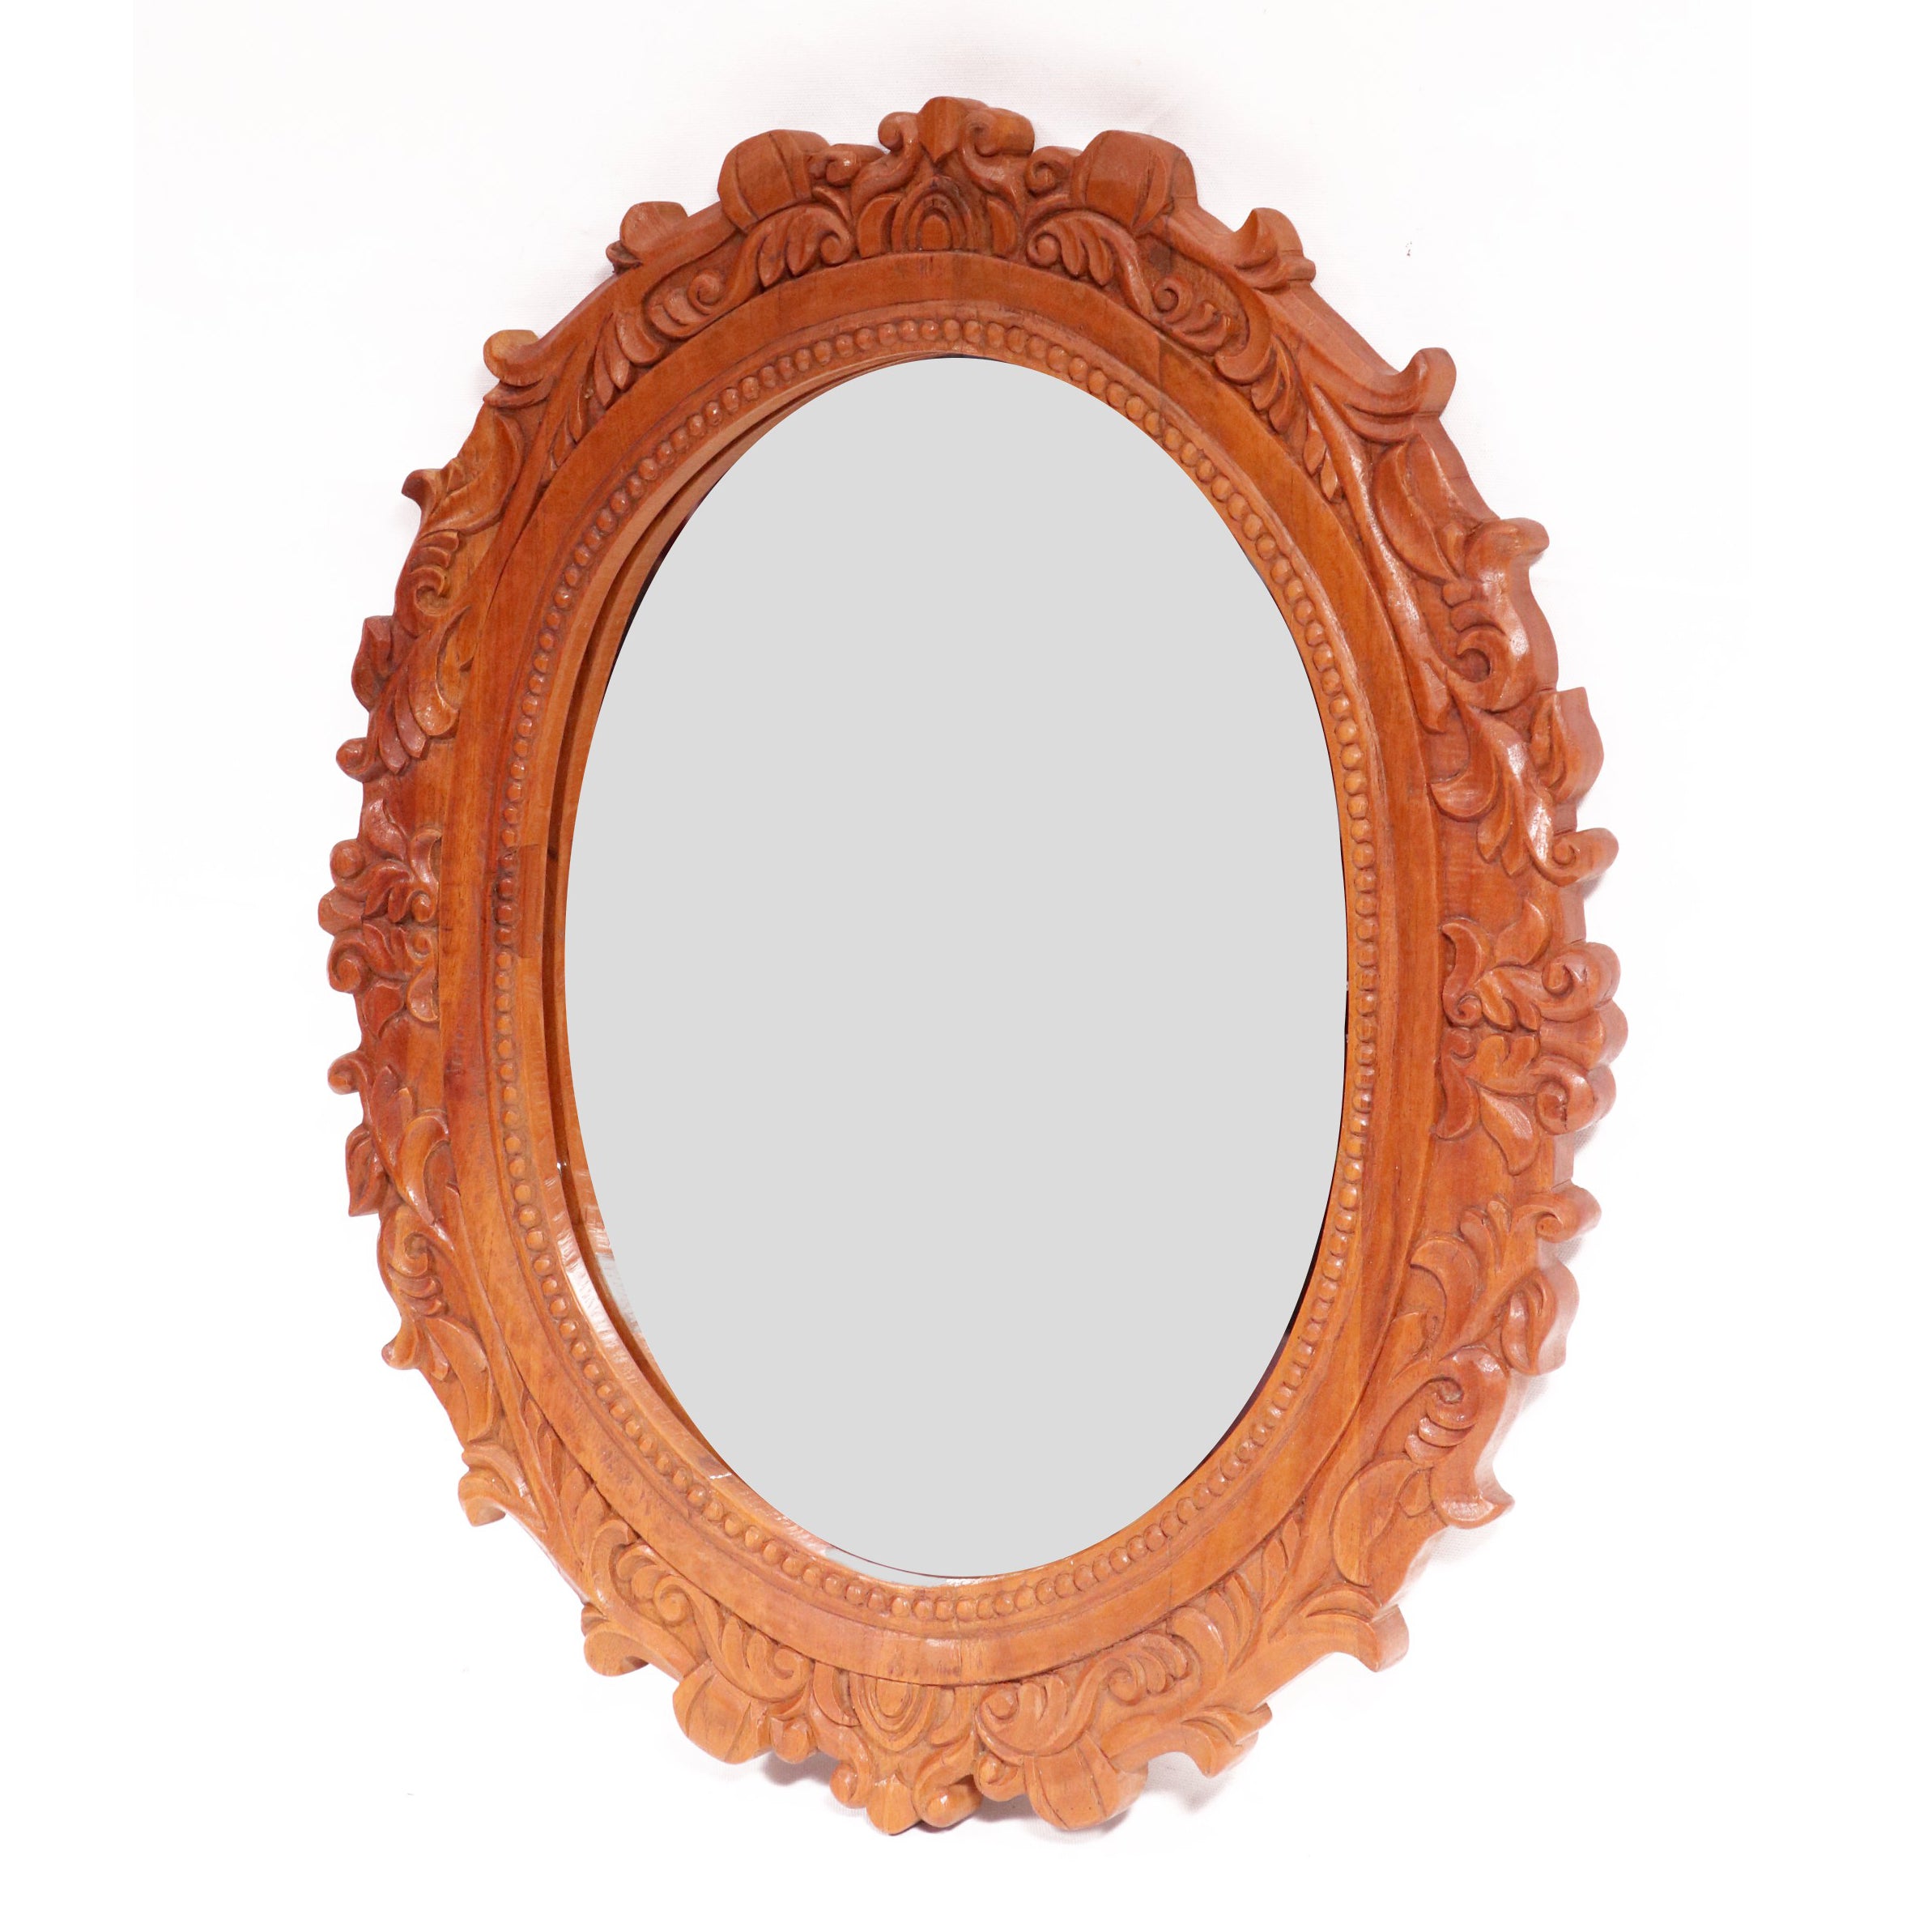 Wooden Sun flames carved round mirror Mirror